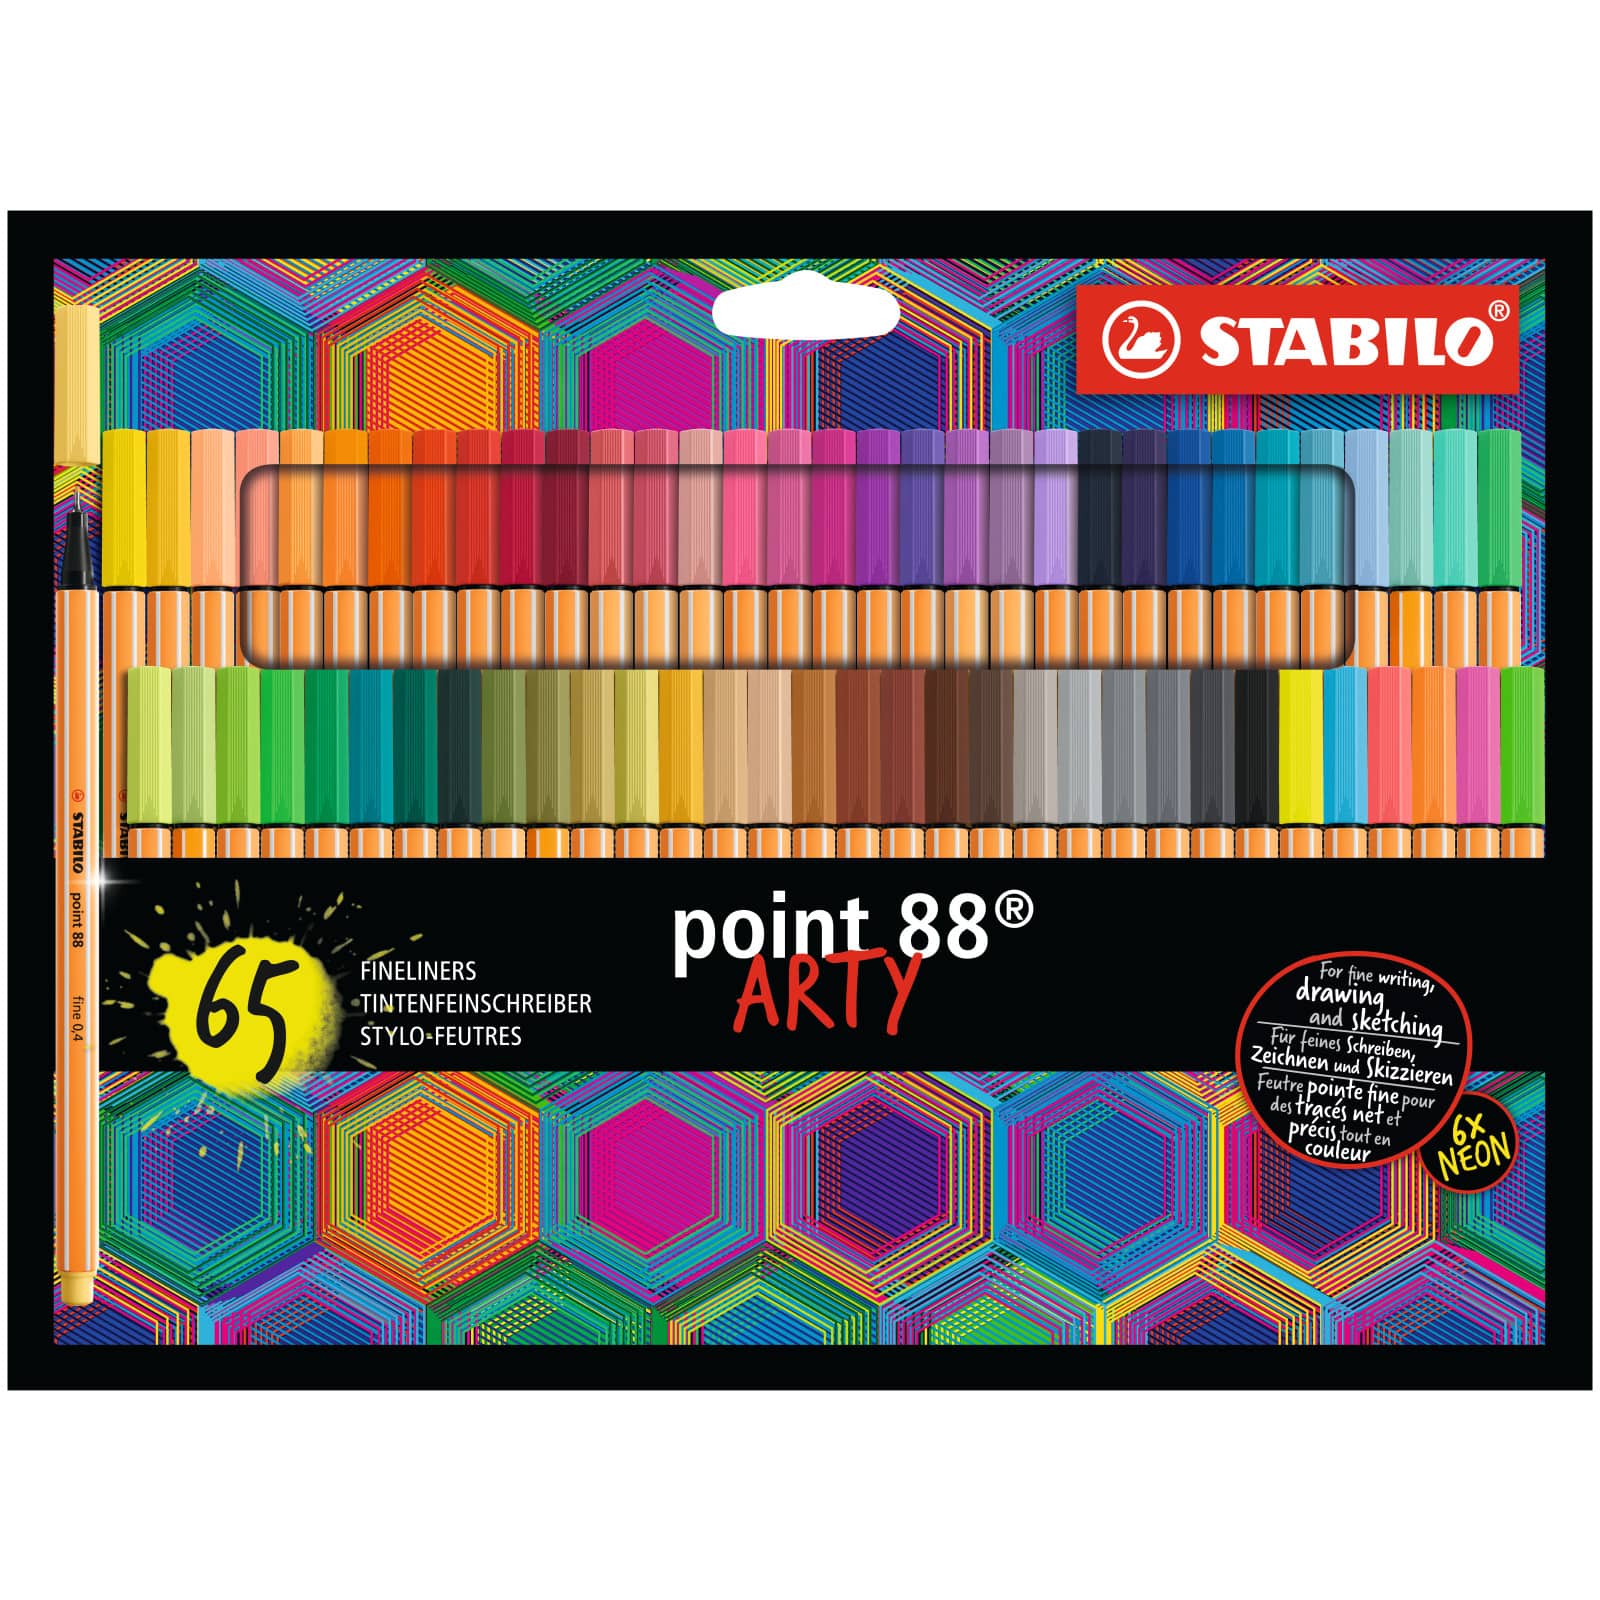 STABILO® ARTY Point 88 65-Pen Set